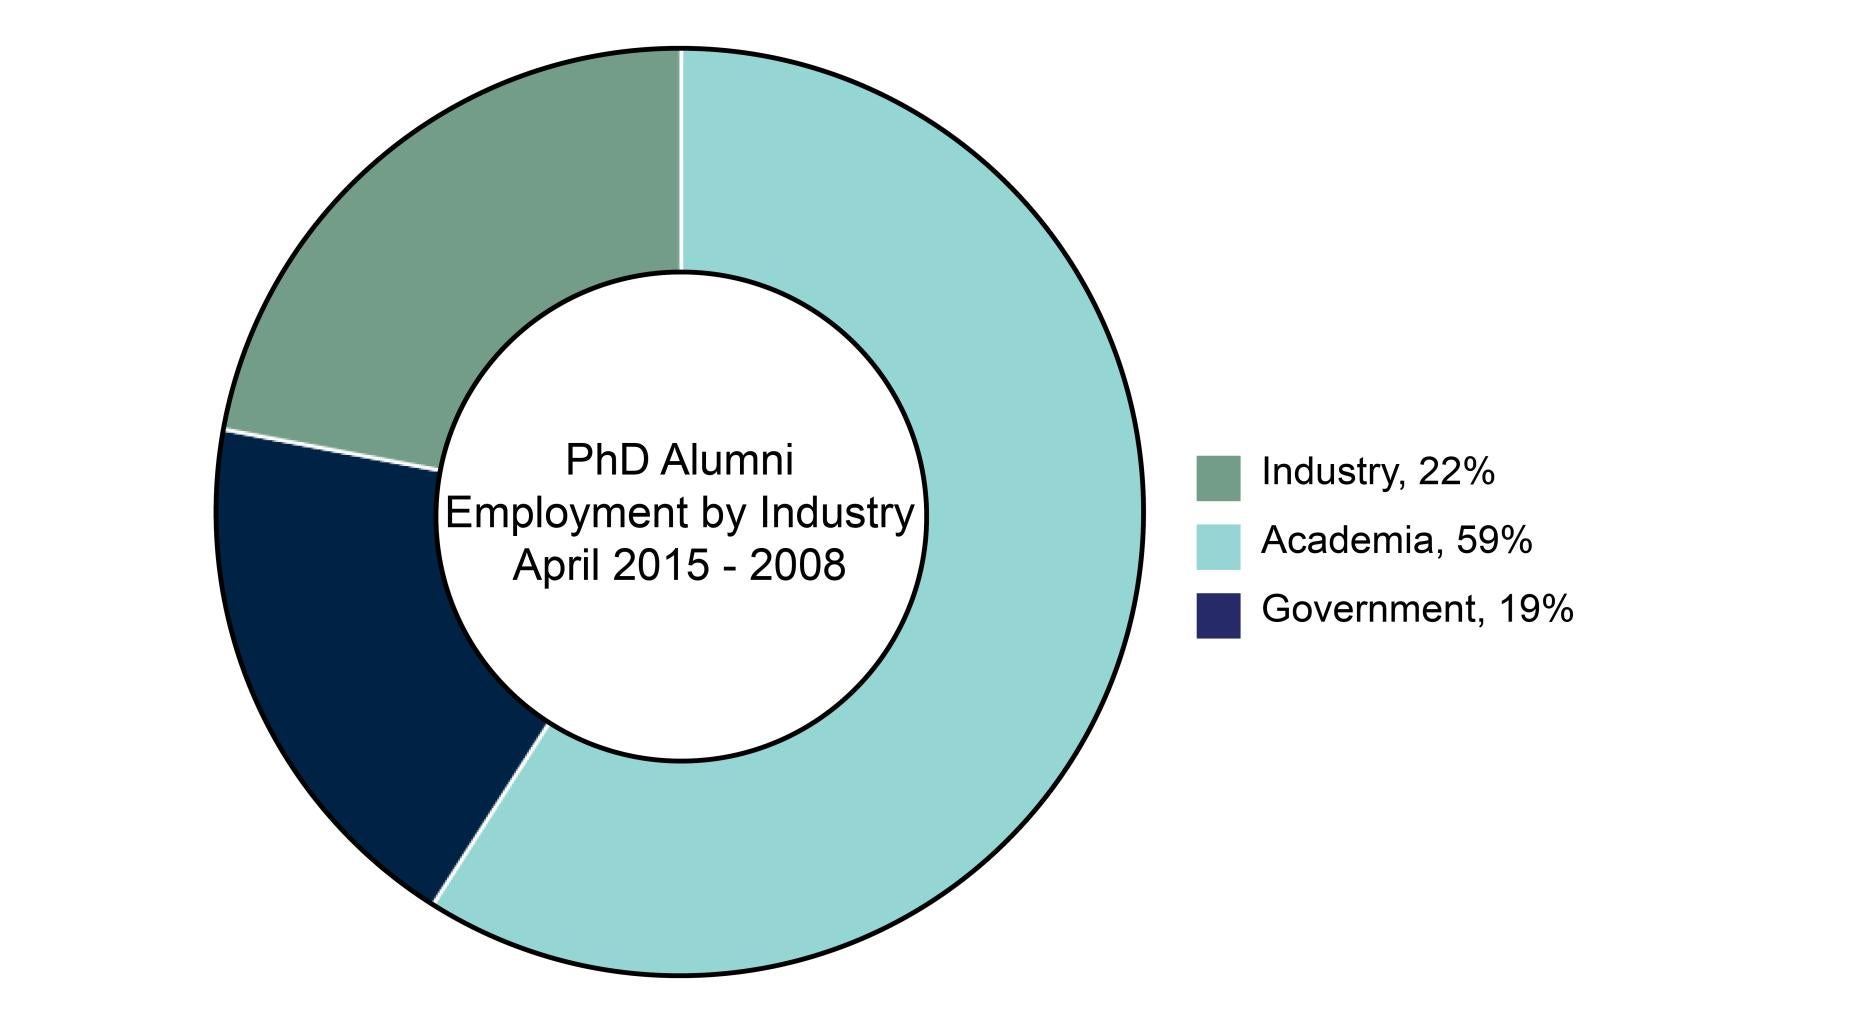 PhD Alumni Employment by Industry